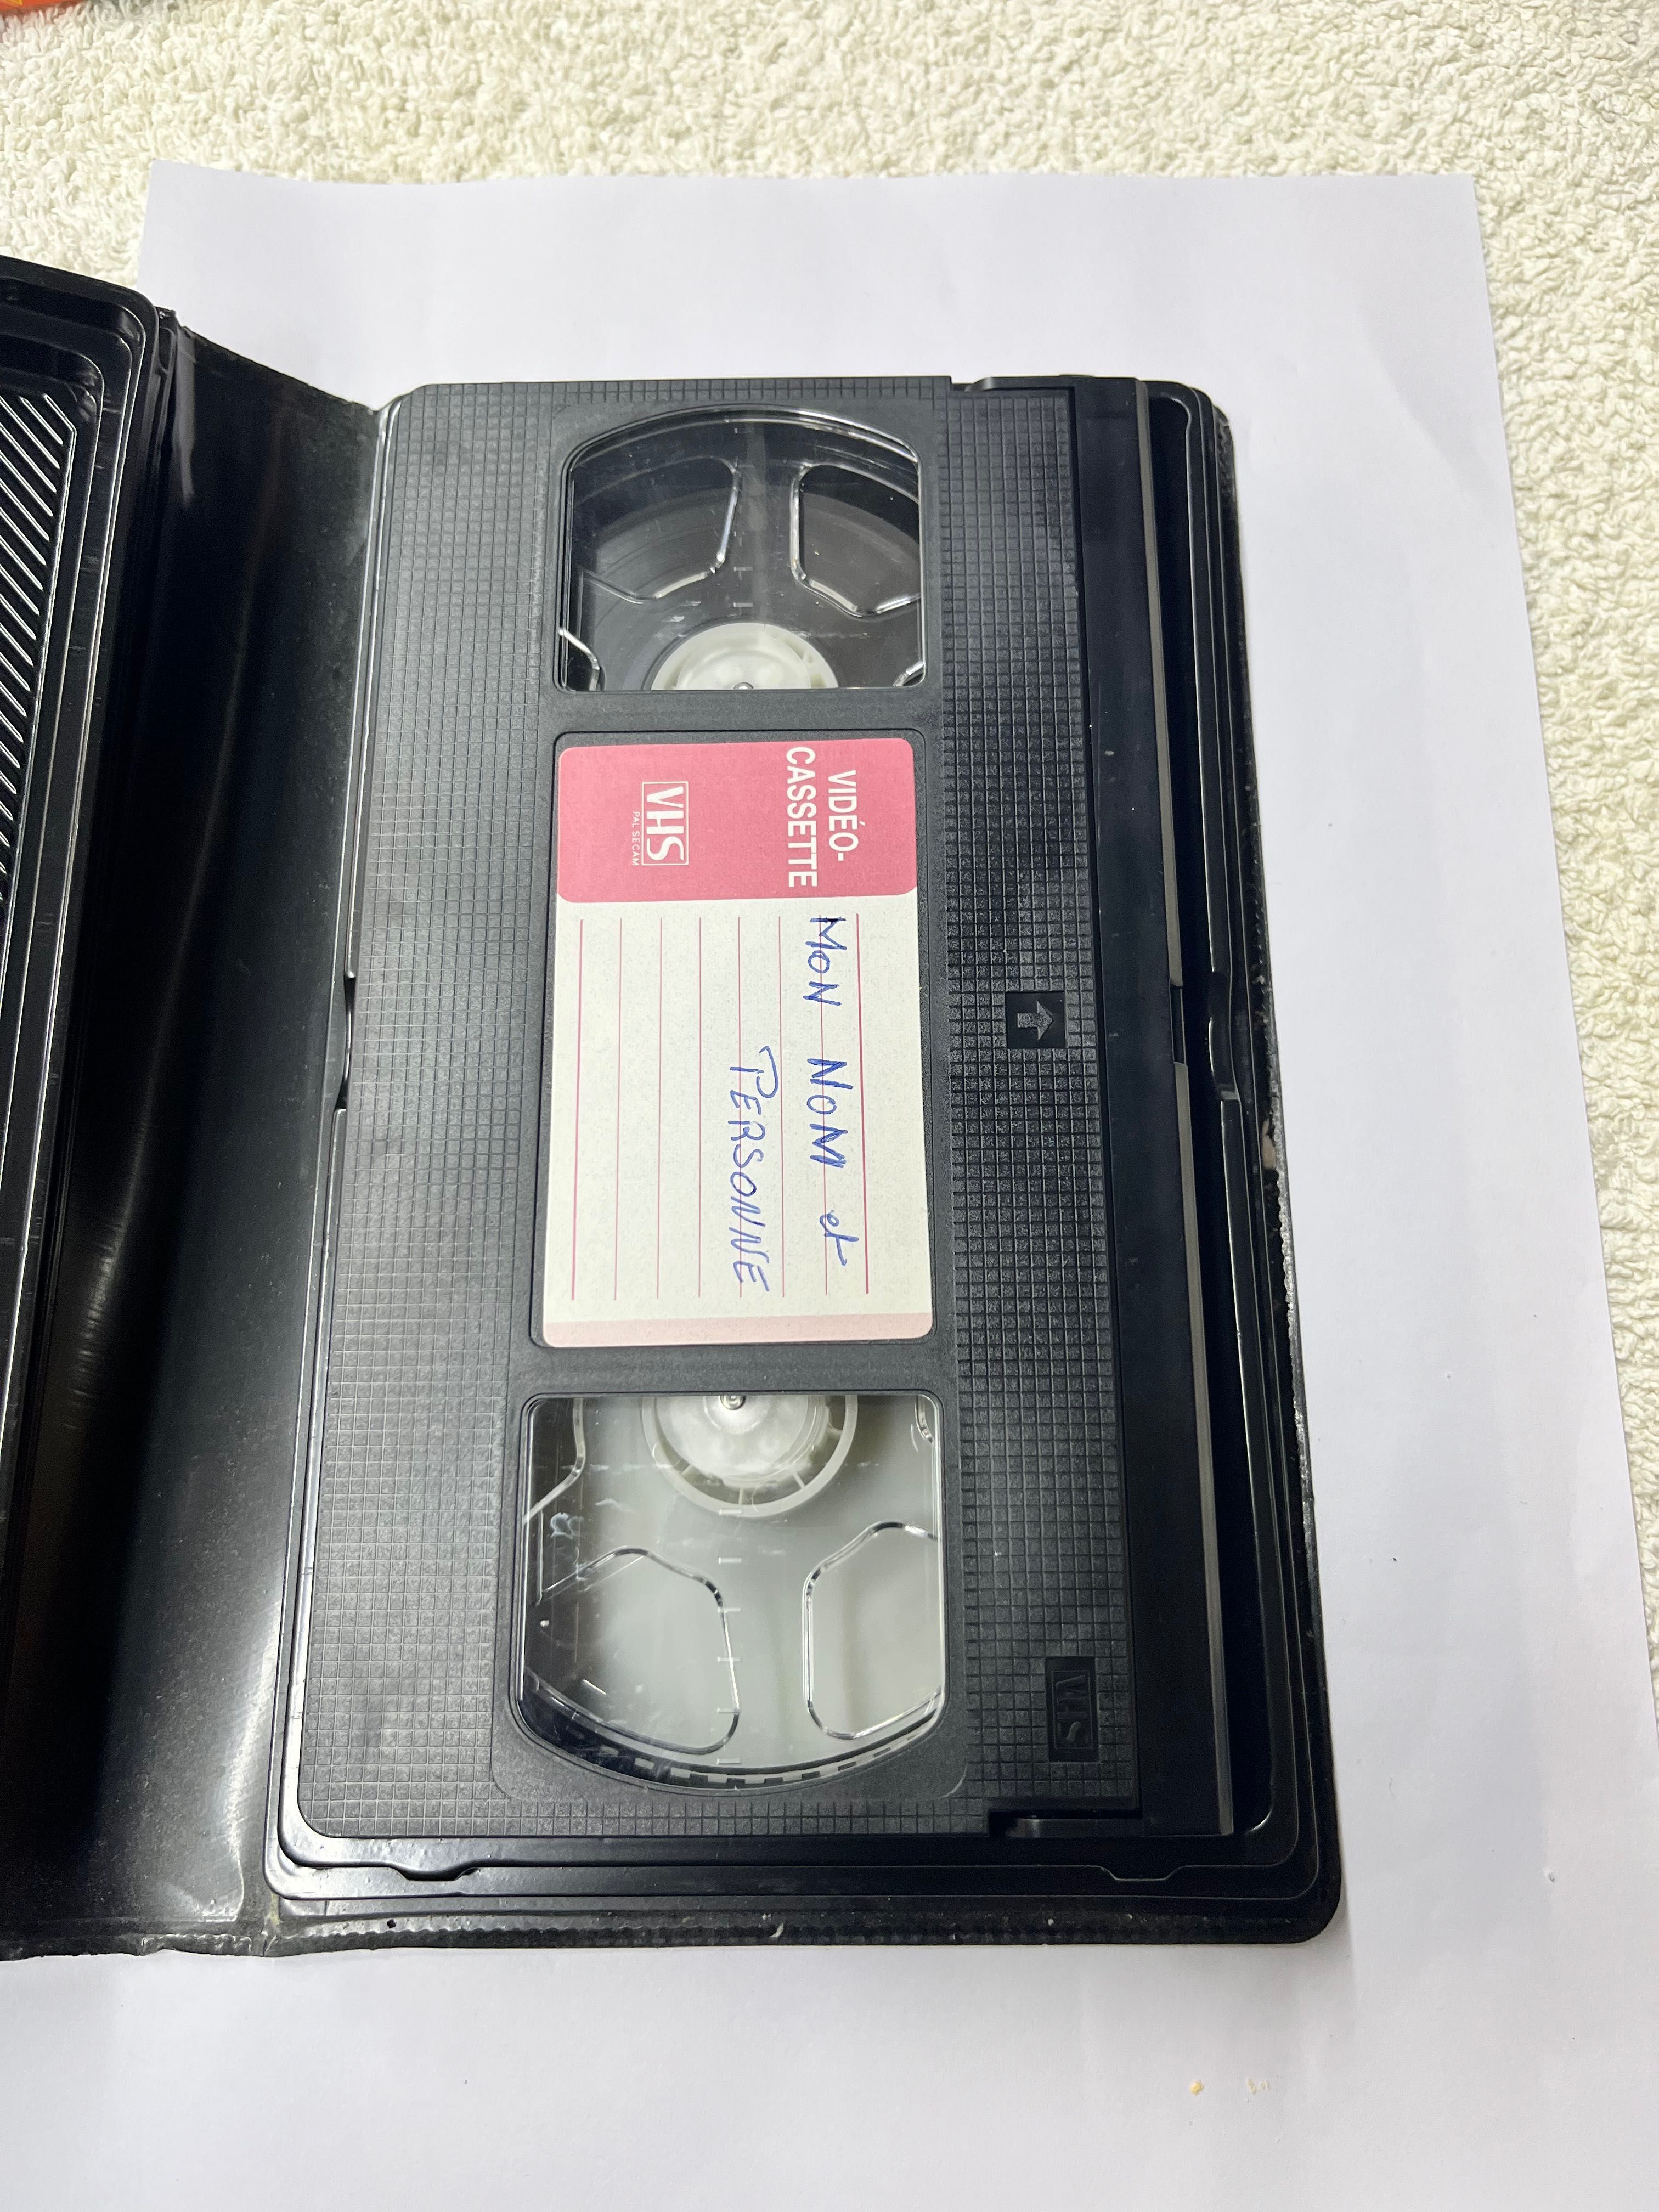 Kaseta VHS kasety